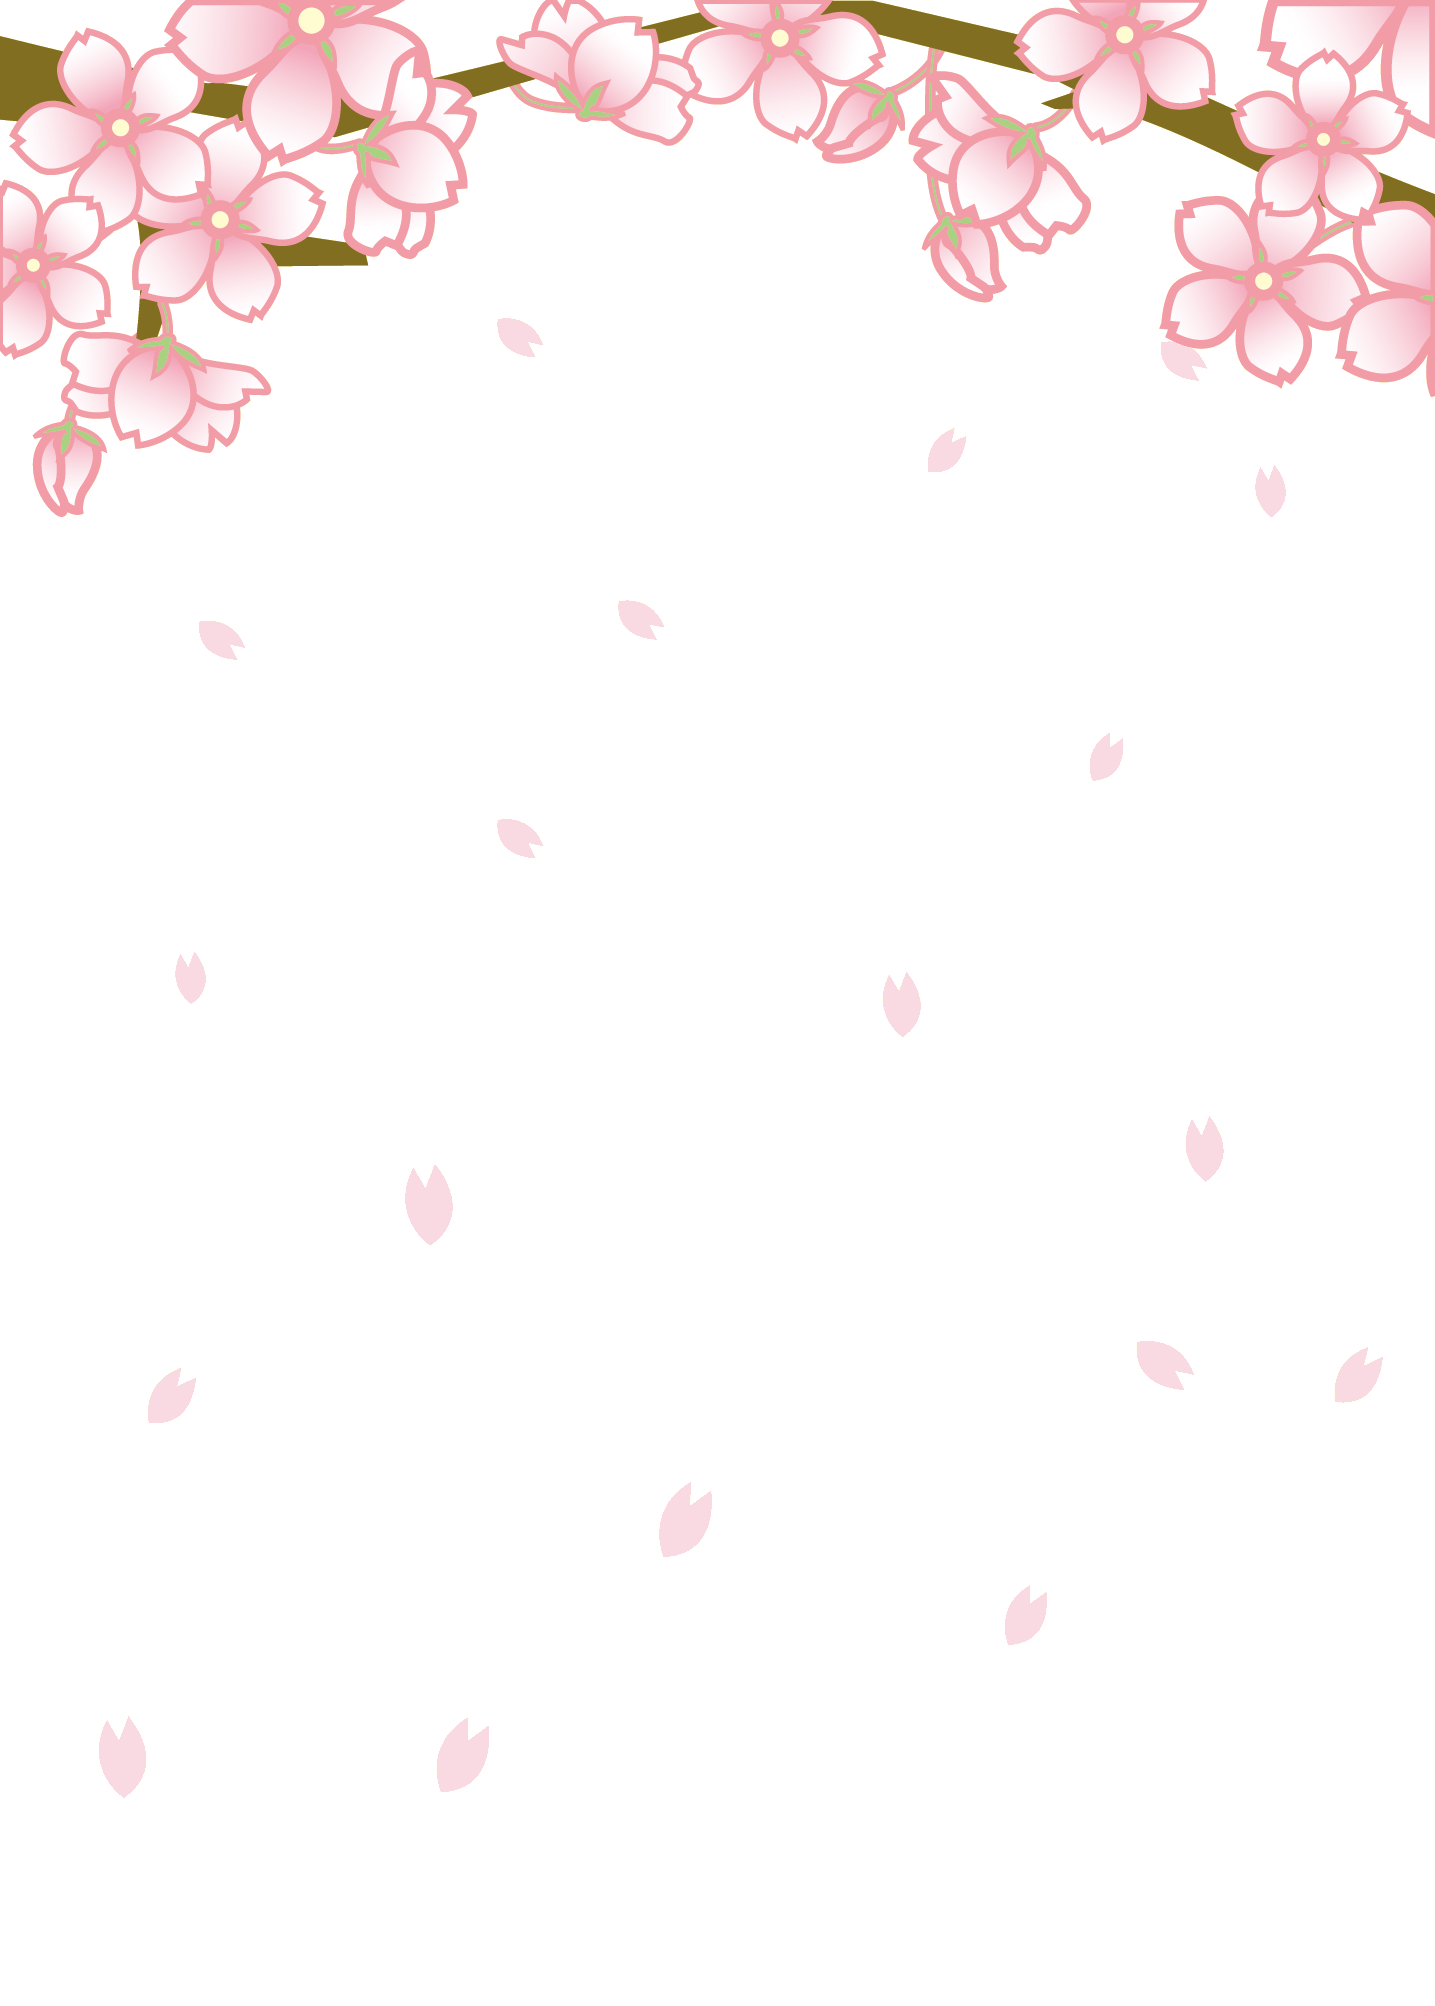 春のイラストno 157 舞い散る桜 壁紙にも 無料のフリー素材集 花鳥風月